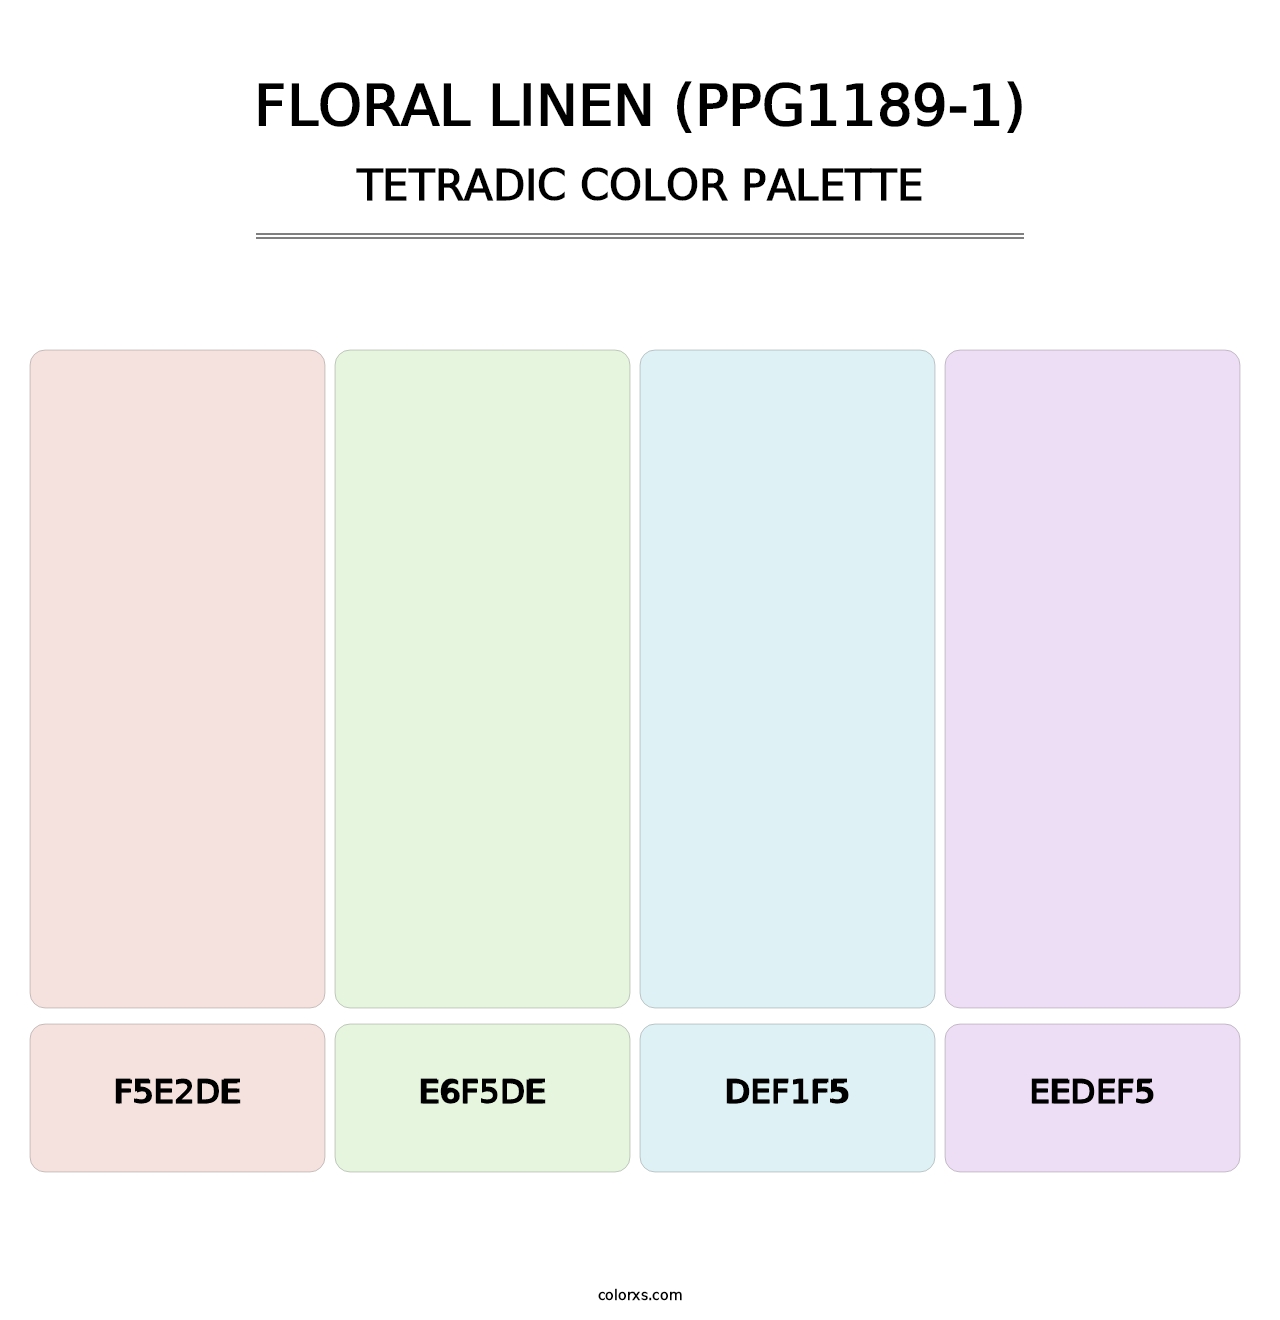 Floral Linen (PPG1189-1) - Tetradic Color Palette